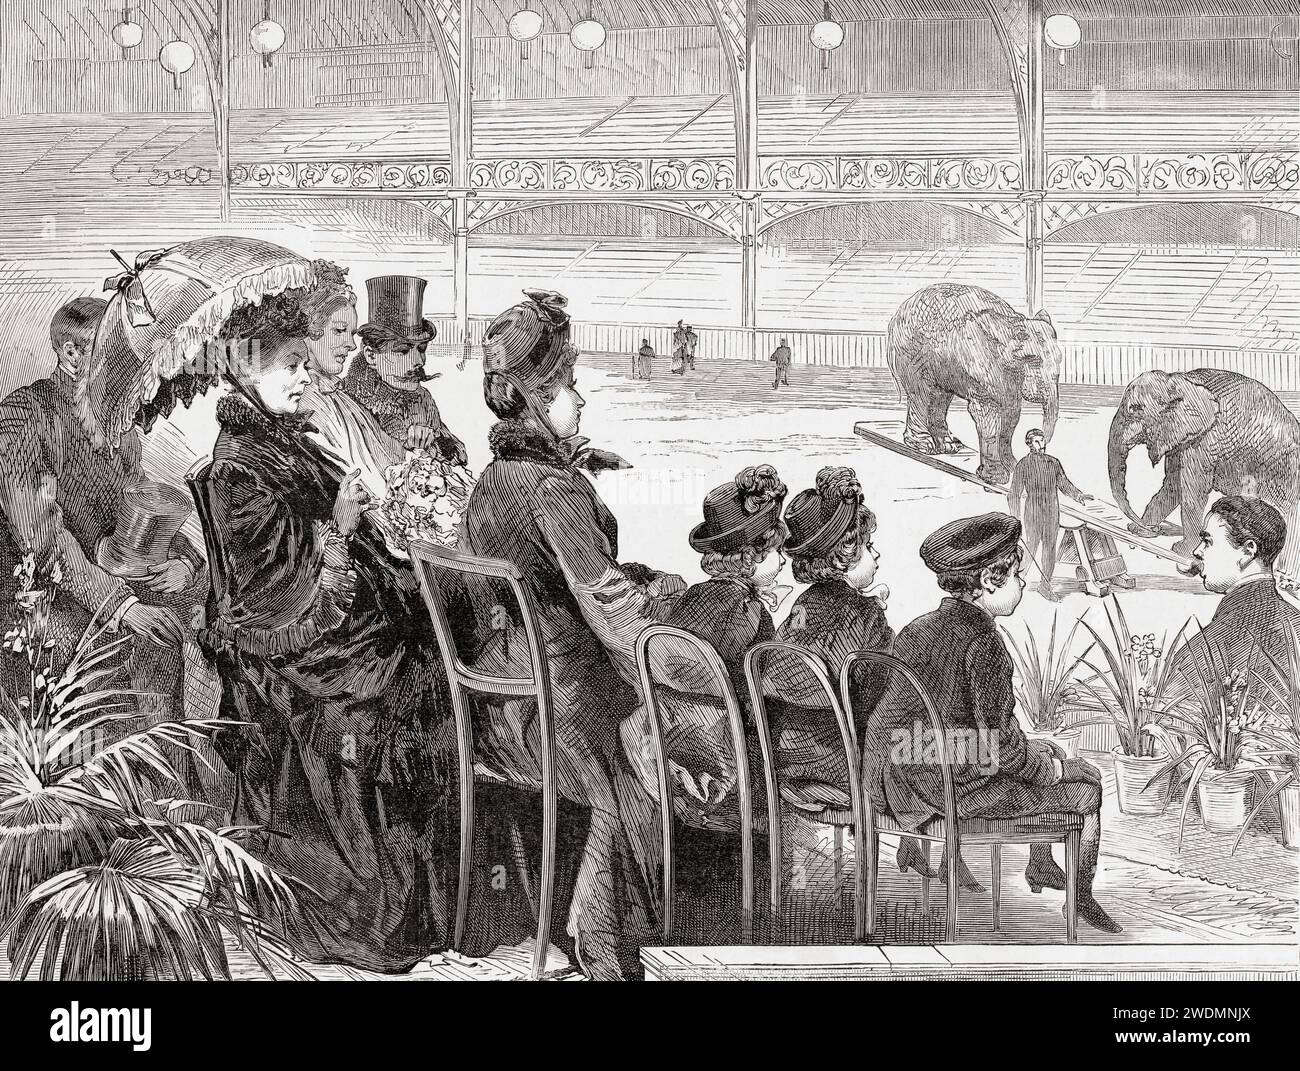 La reine Victoria visite Olympia, West Kensington, Londres, Angleterre en 1887. Victoria, 1819 – 1901. Reine du Royaume-Uni de Grande-Bretagne et d'Irlande. Extrait du London Illustrated News, publié le 26 mars 1887. Banque D'Images